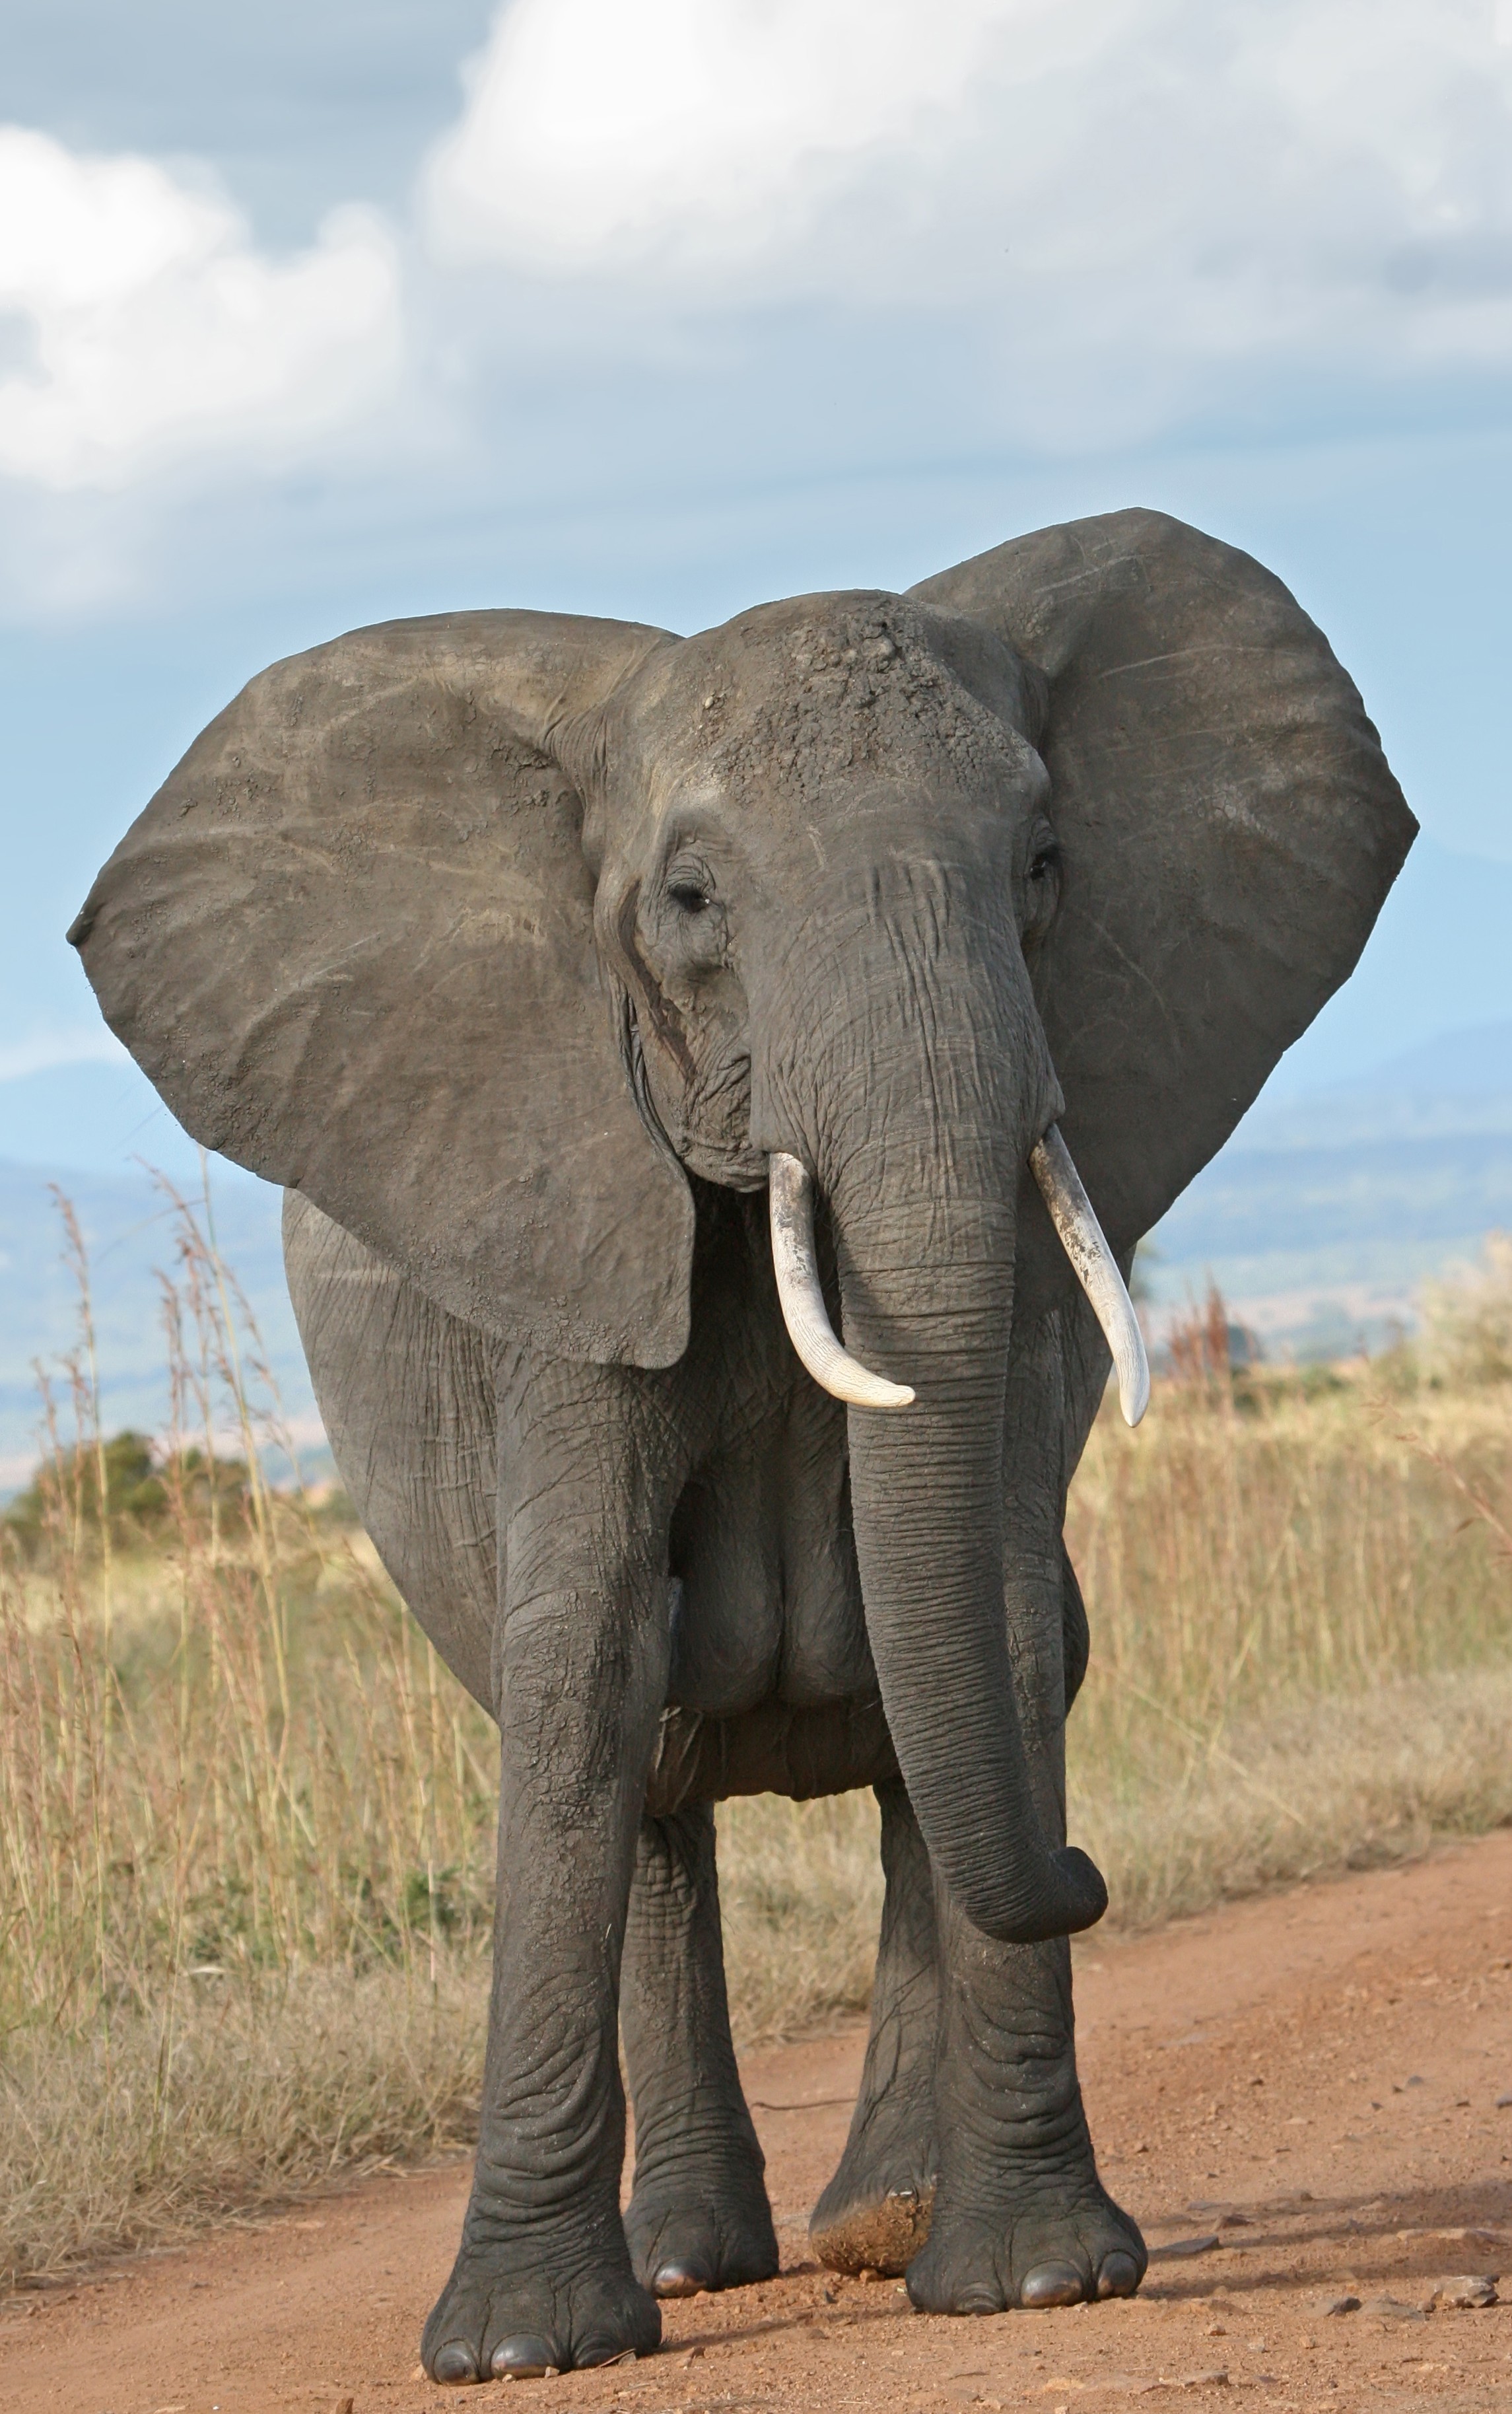 encantadores amigos fondos de pantalla,elefante,elefantes y mamuts,animal terrestre,elefante indio,elefante africano